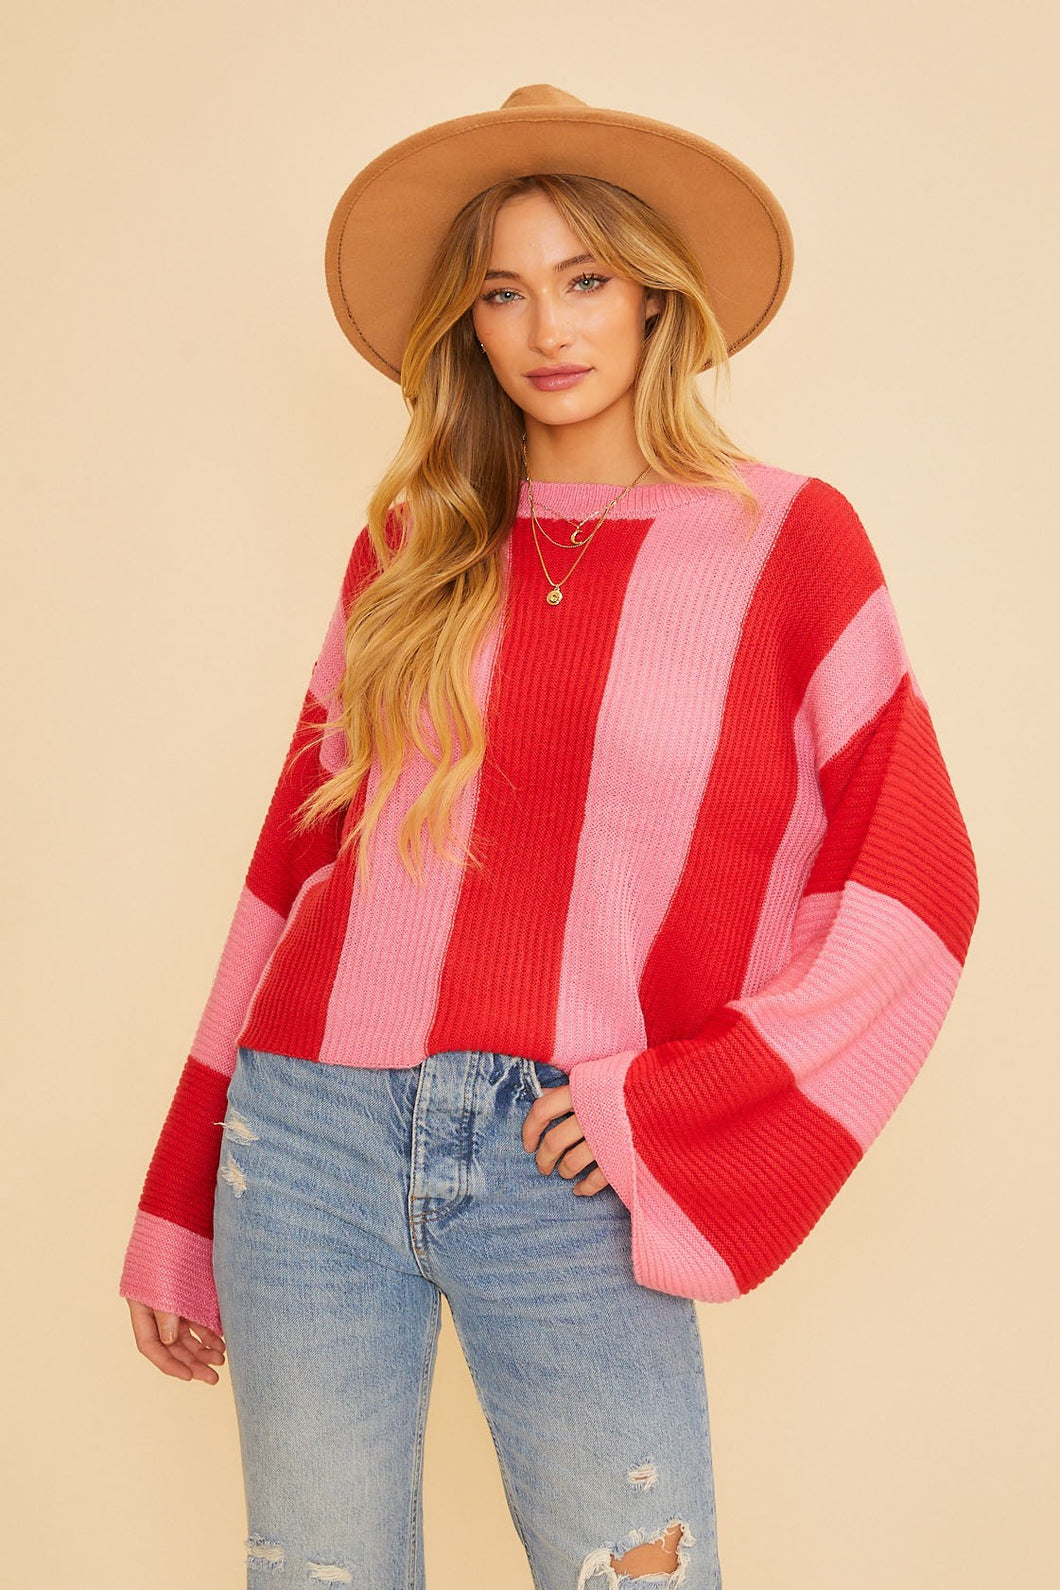 Winnie Red/Pink Sweater